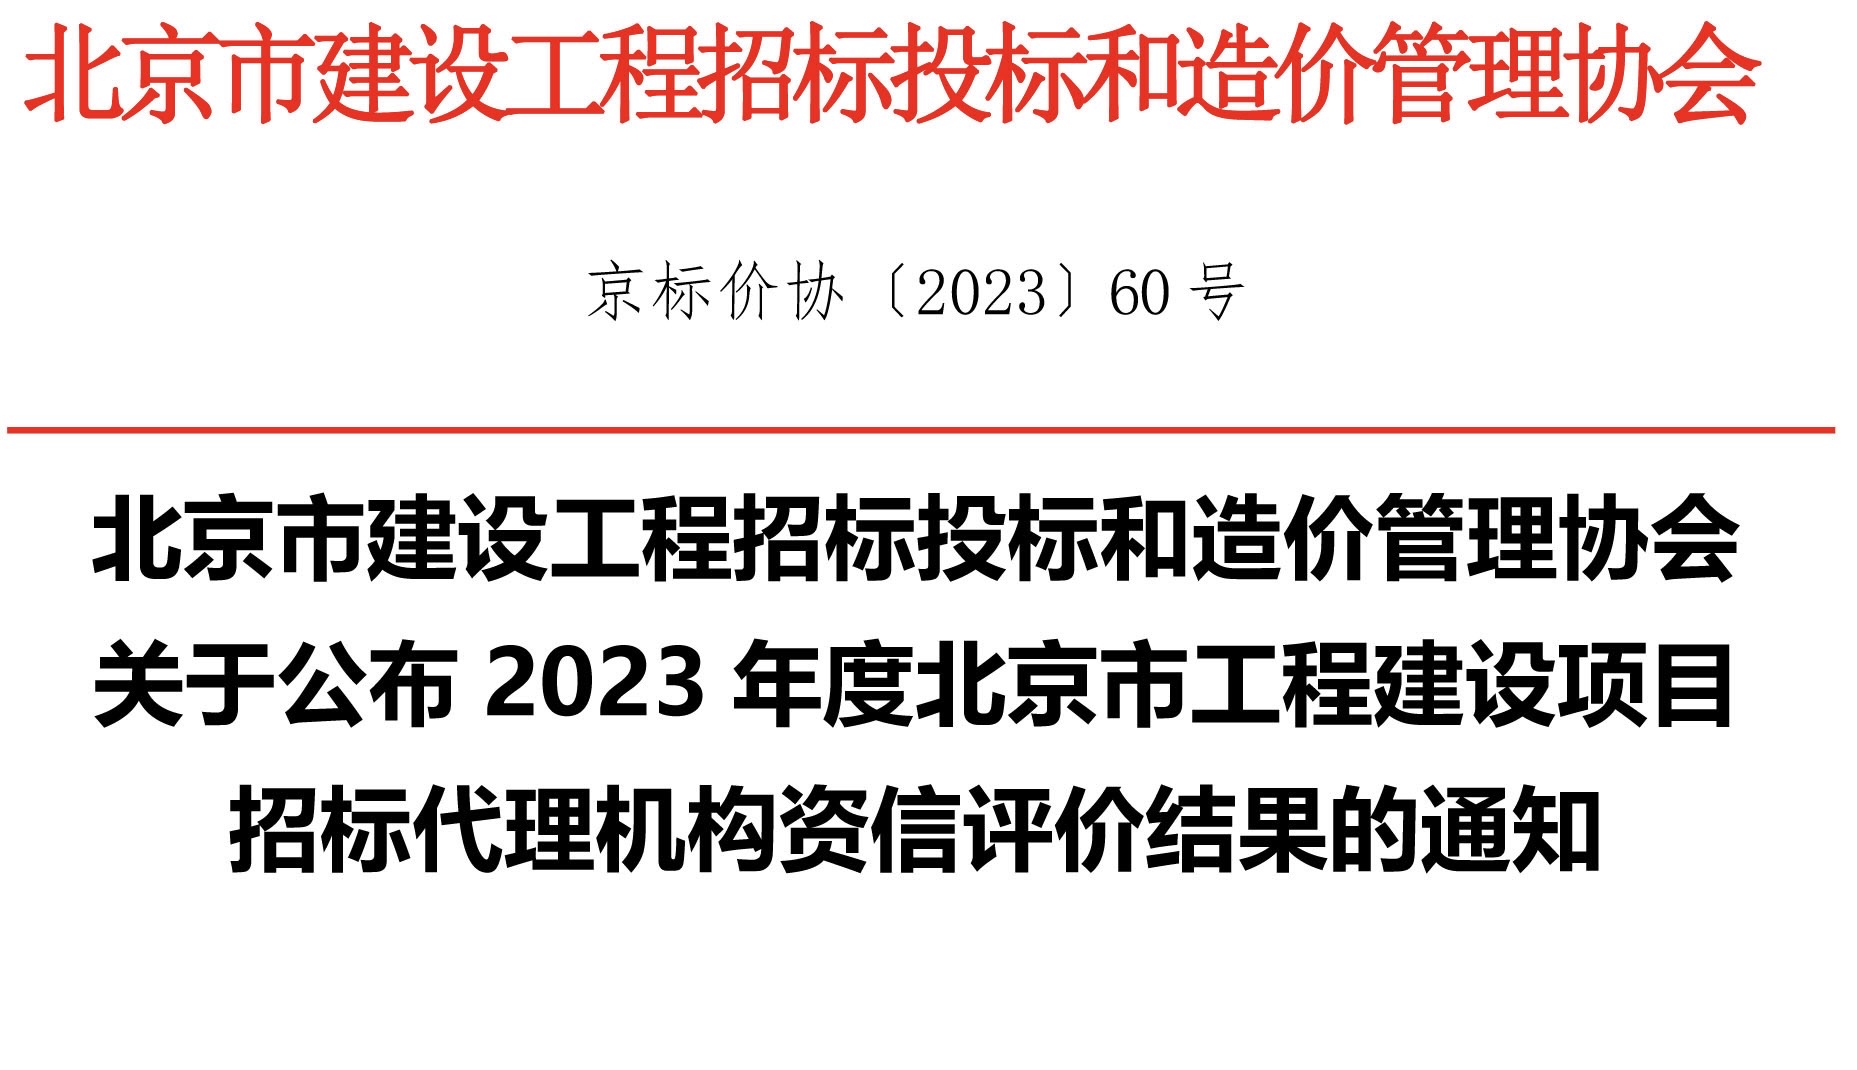 北京市建设工程招标投标和造价管理协会关于公布2023年度北京市工程建设项目招标代理机构资信评价结果的通知